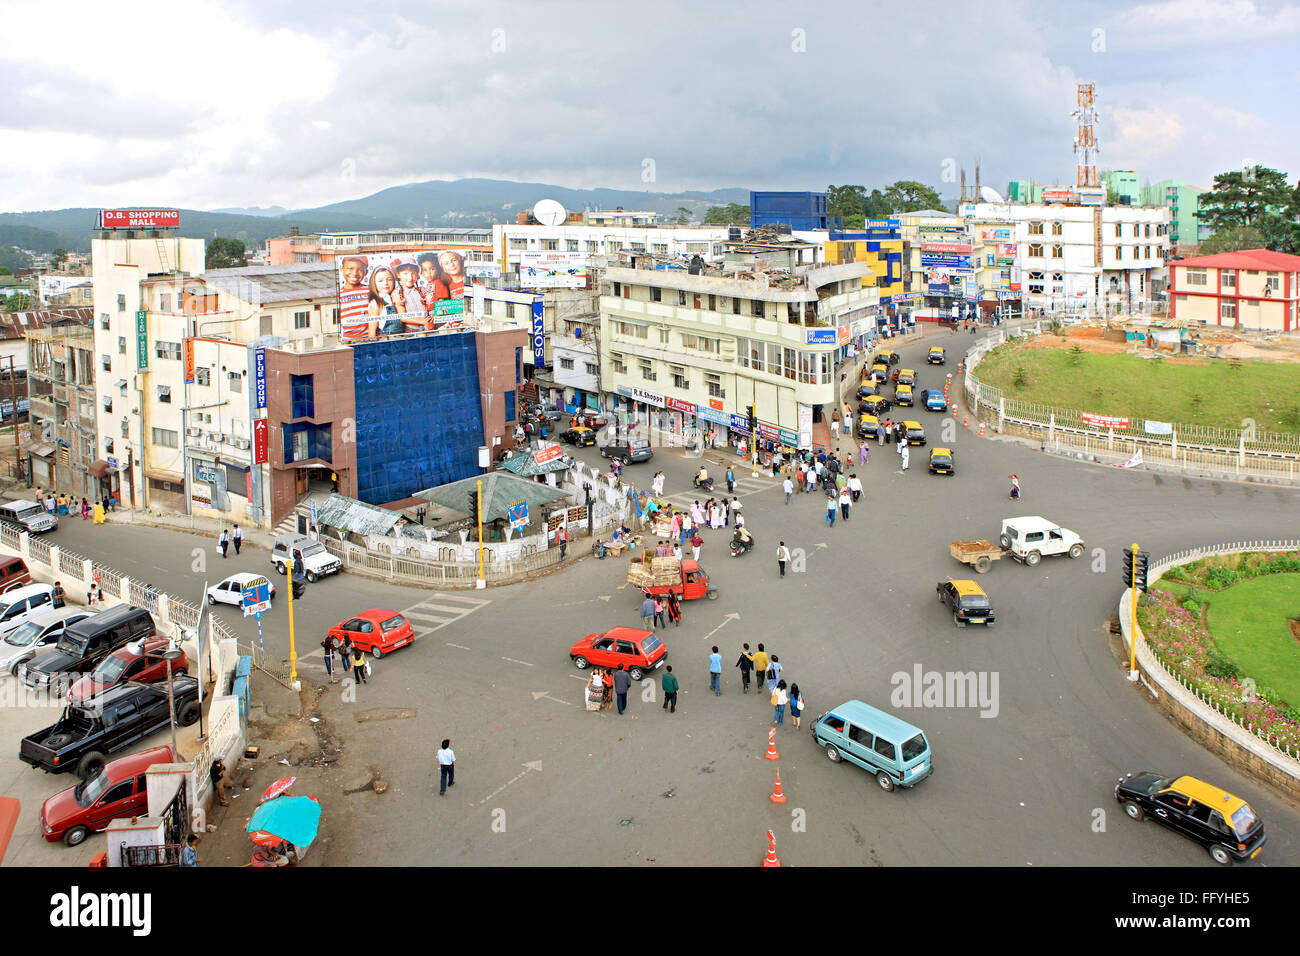 Aerial of shillong town ; Meghalaya ; India - hma 225746 Stock Photo